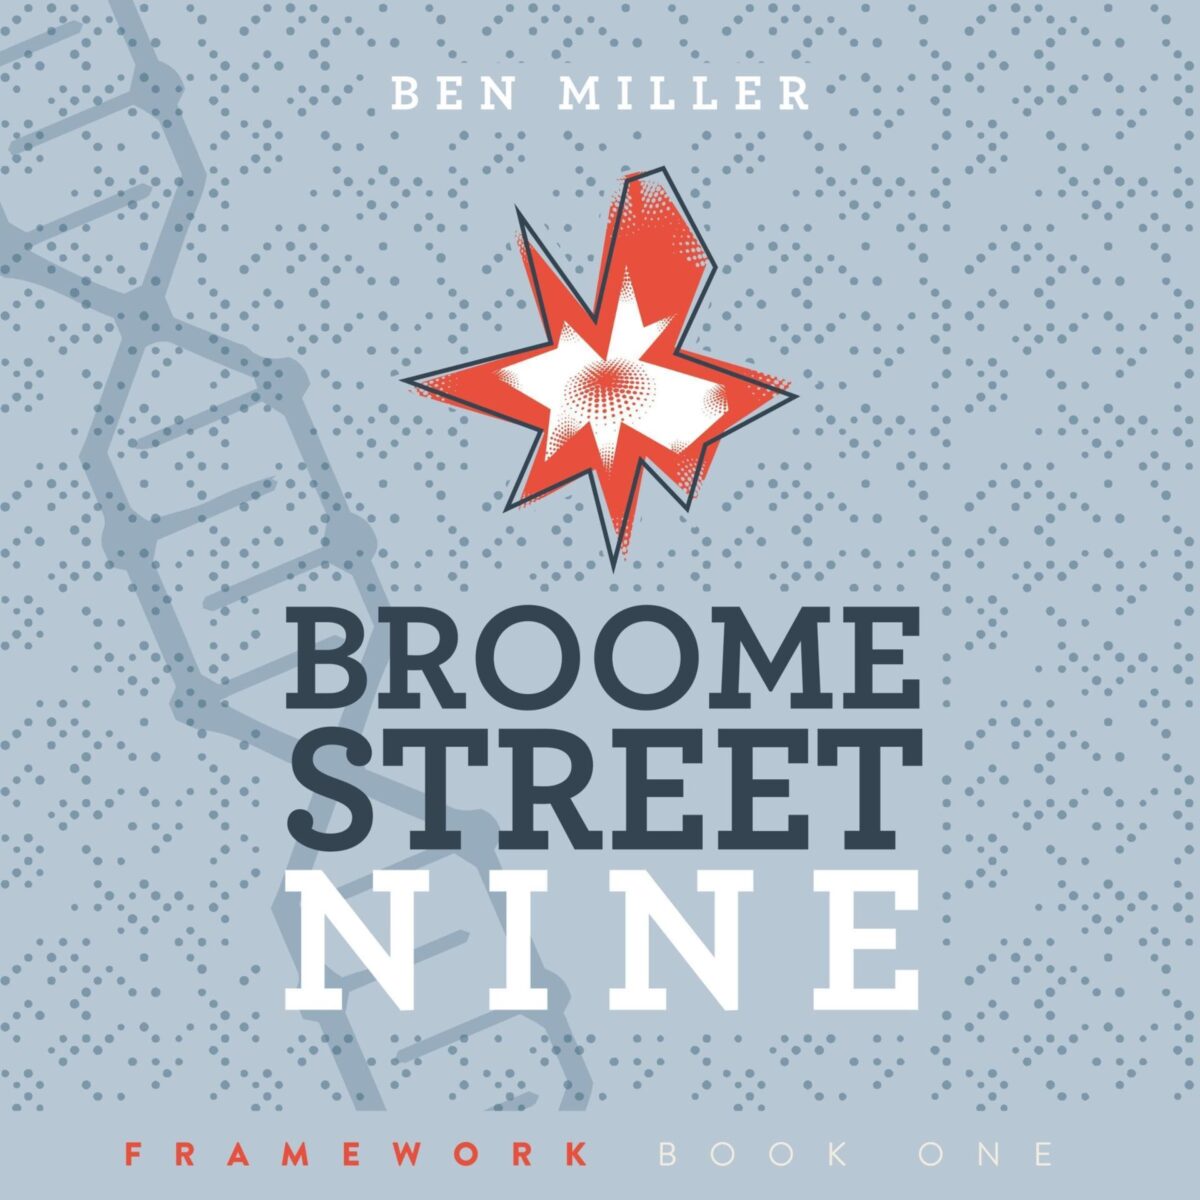 Broome Street Nine